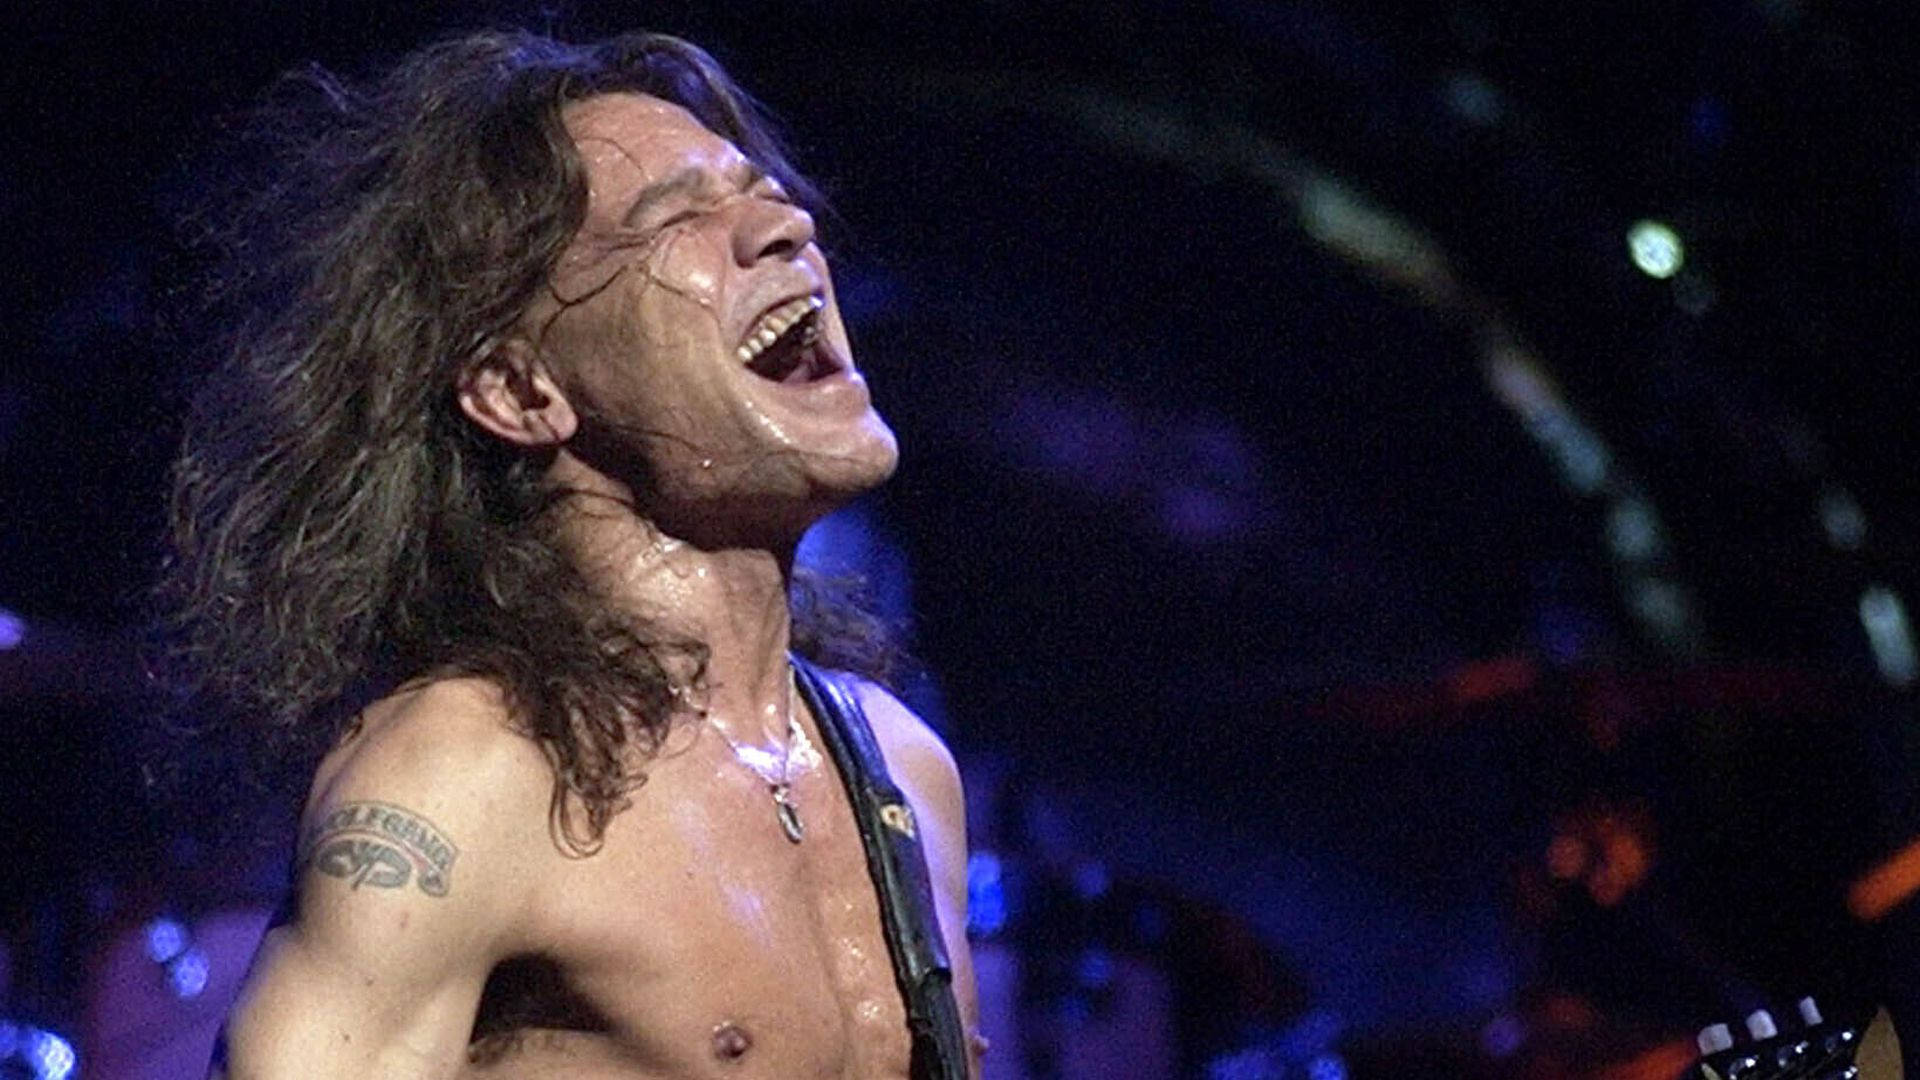 Eddie Van Halen Open Mouth Background